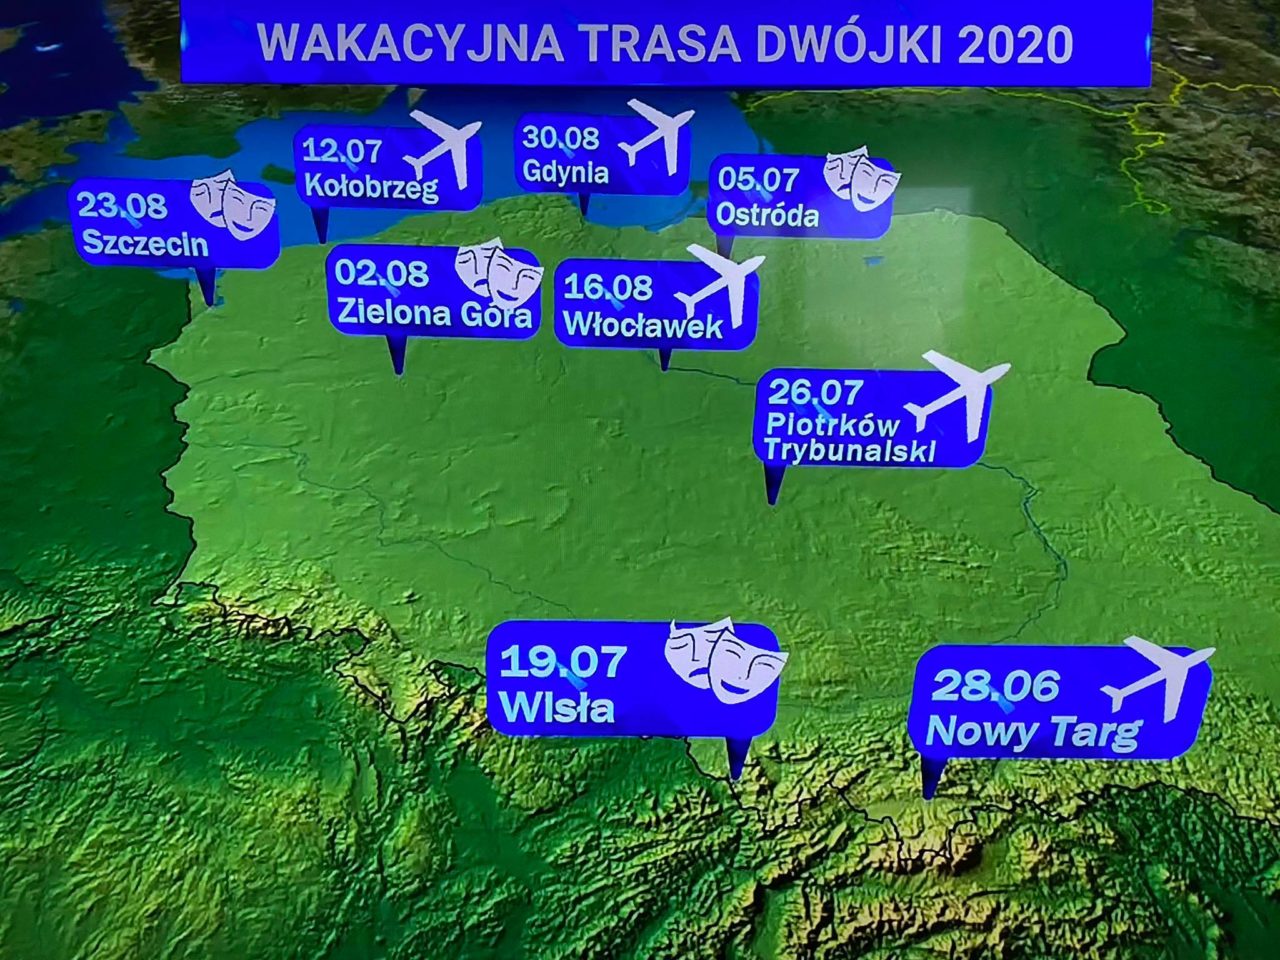 Wakacyjna trasa Dwójki - startuje 28 czerwca w Nowym Targu